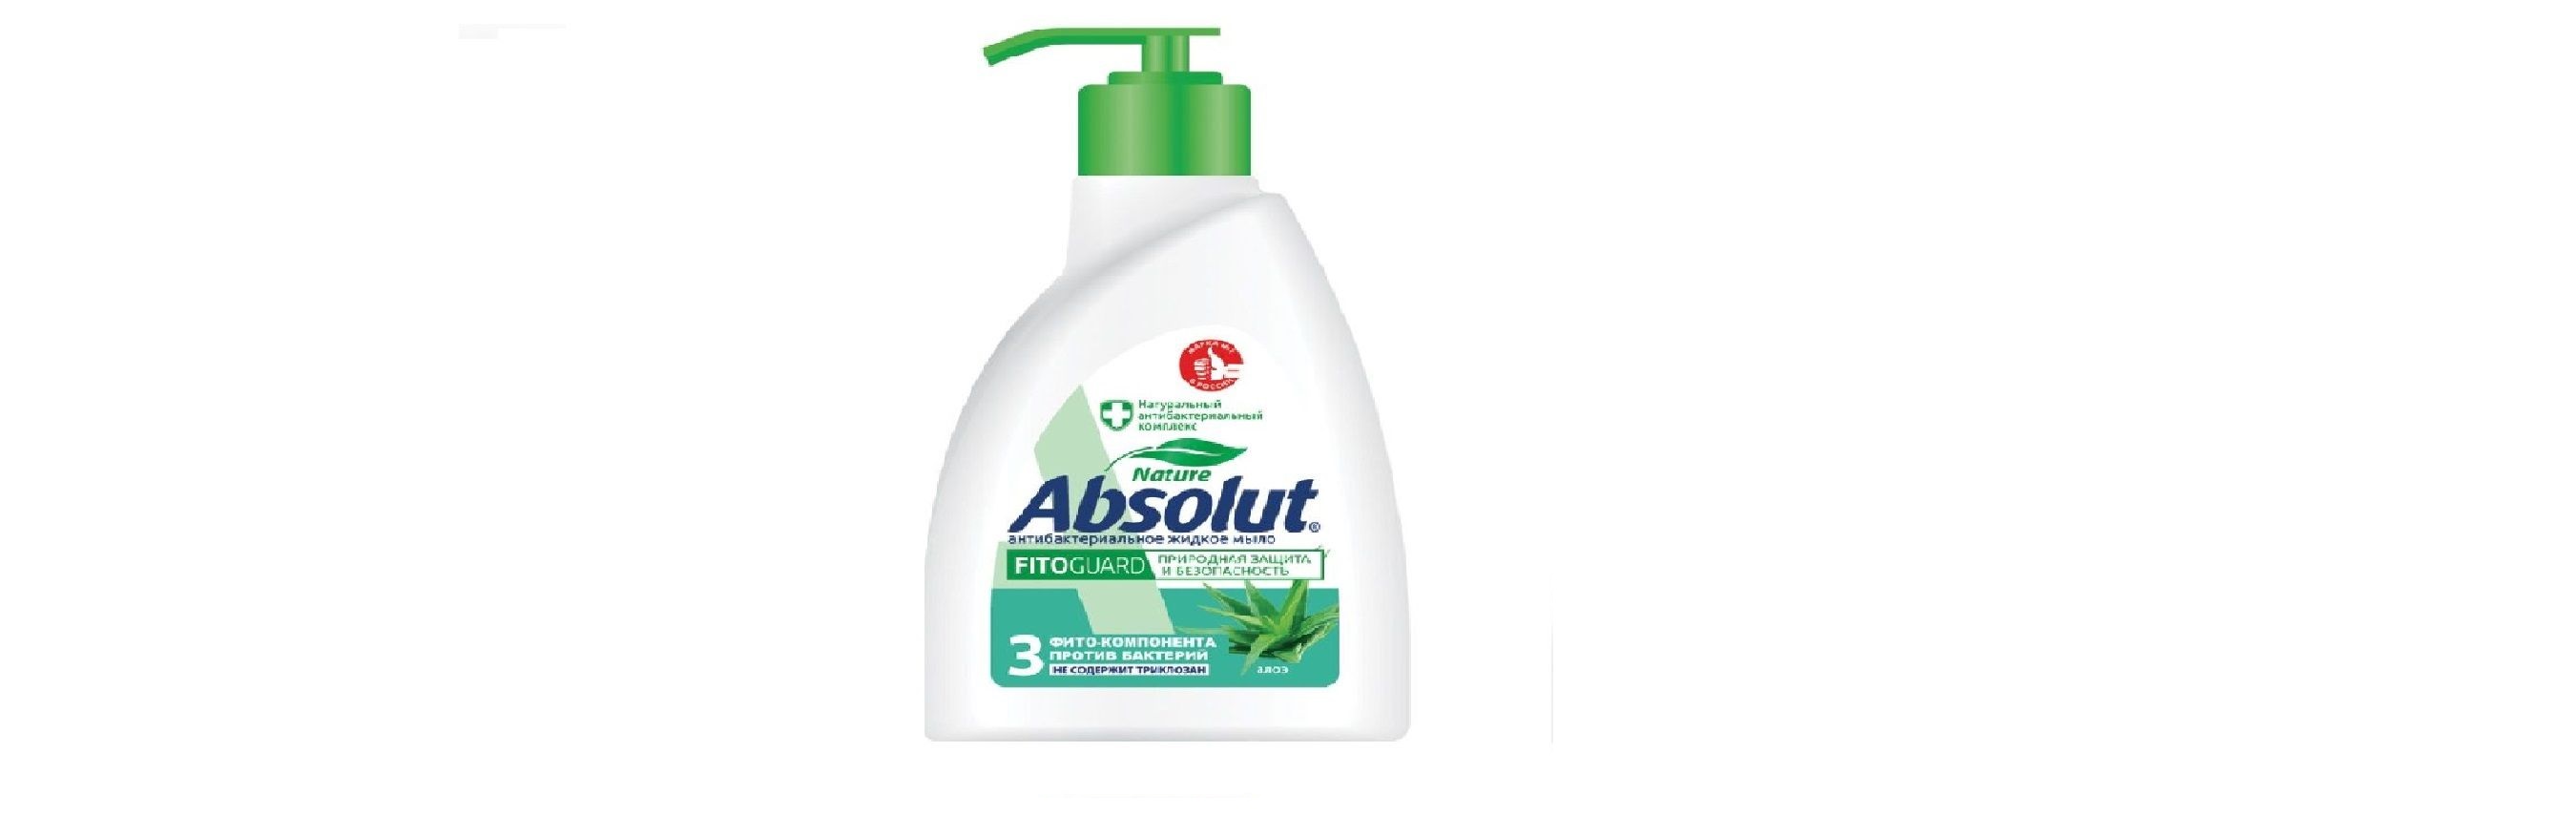 Мыло жидкое Absolut Алоэ Антибактериальное 250 мл 6 штук мыло жидкое absolut ромашка антибактериальное 250 мл 6 штук